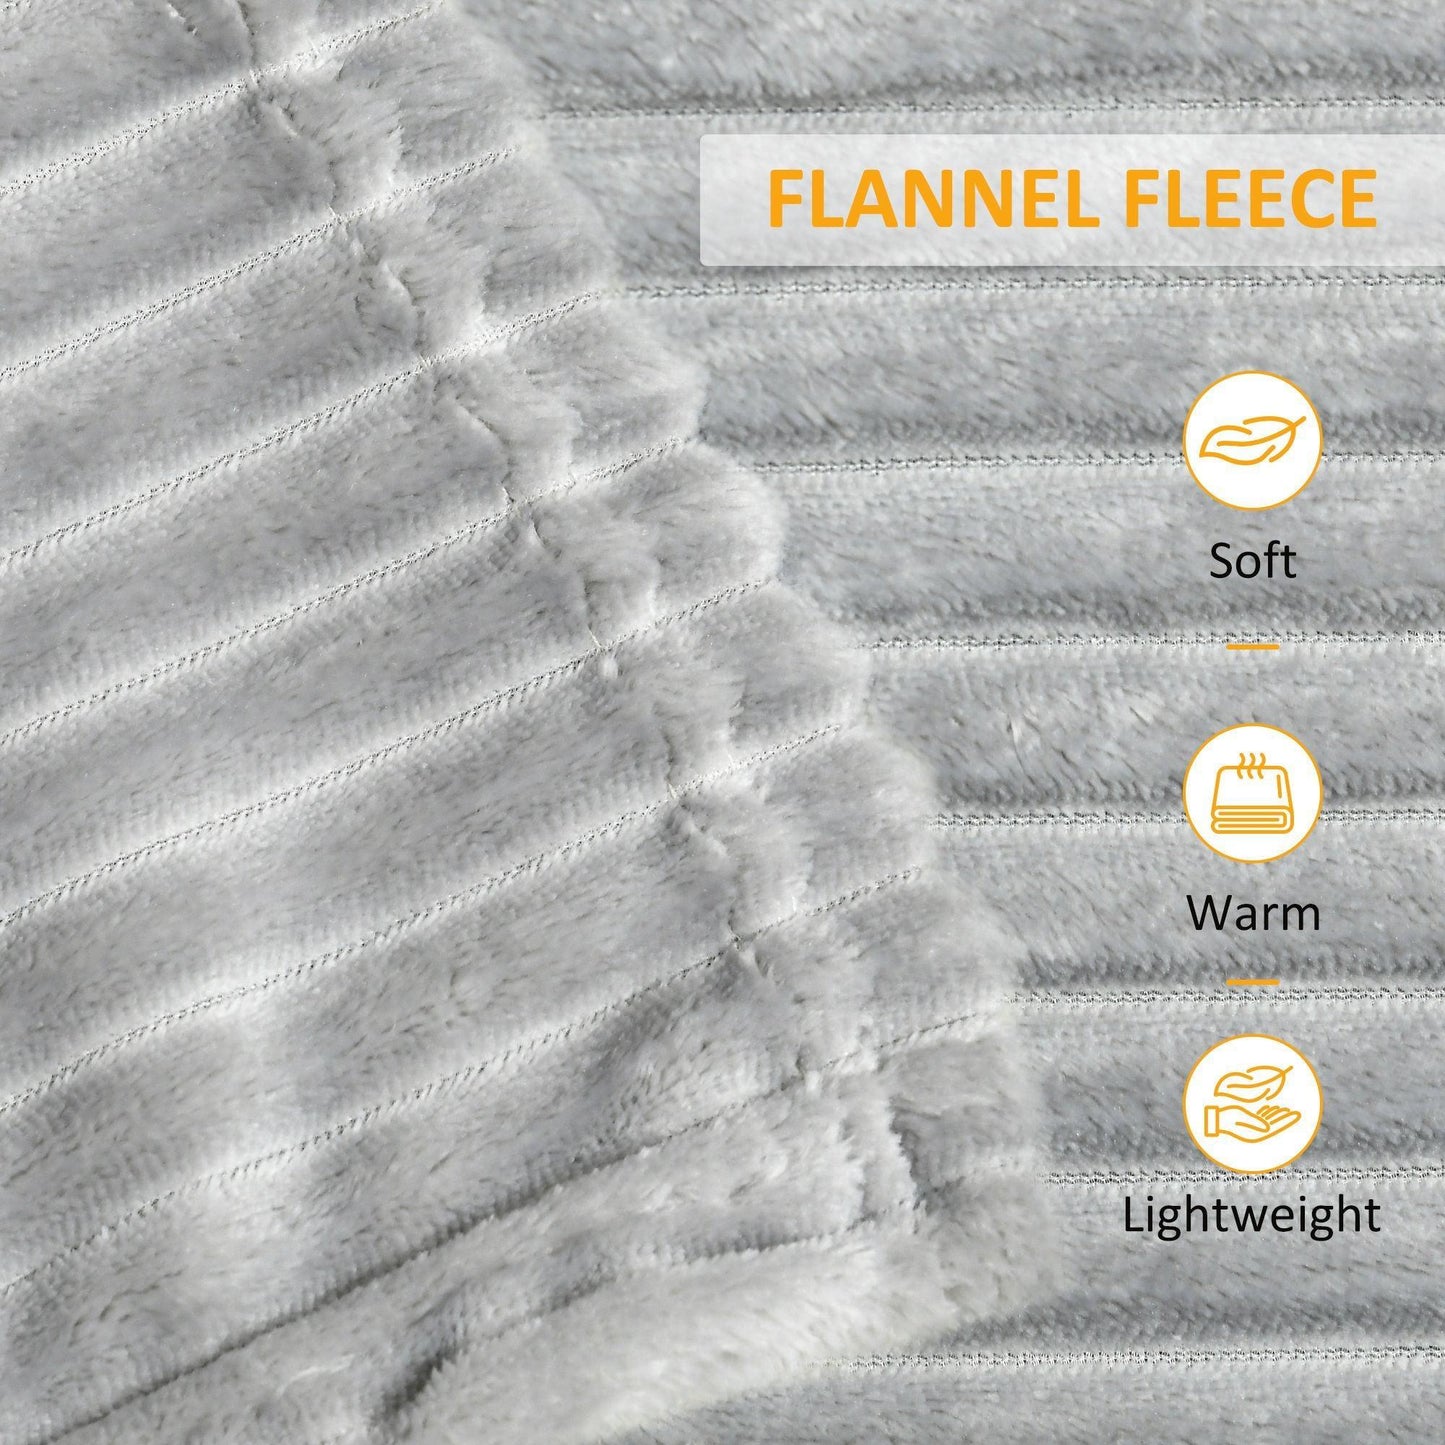 HOMCOM Fleece Blanket - Cozy Bed Throw, Gray - ALL4U RETAILER LTD